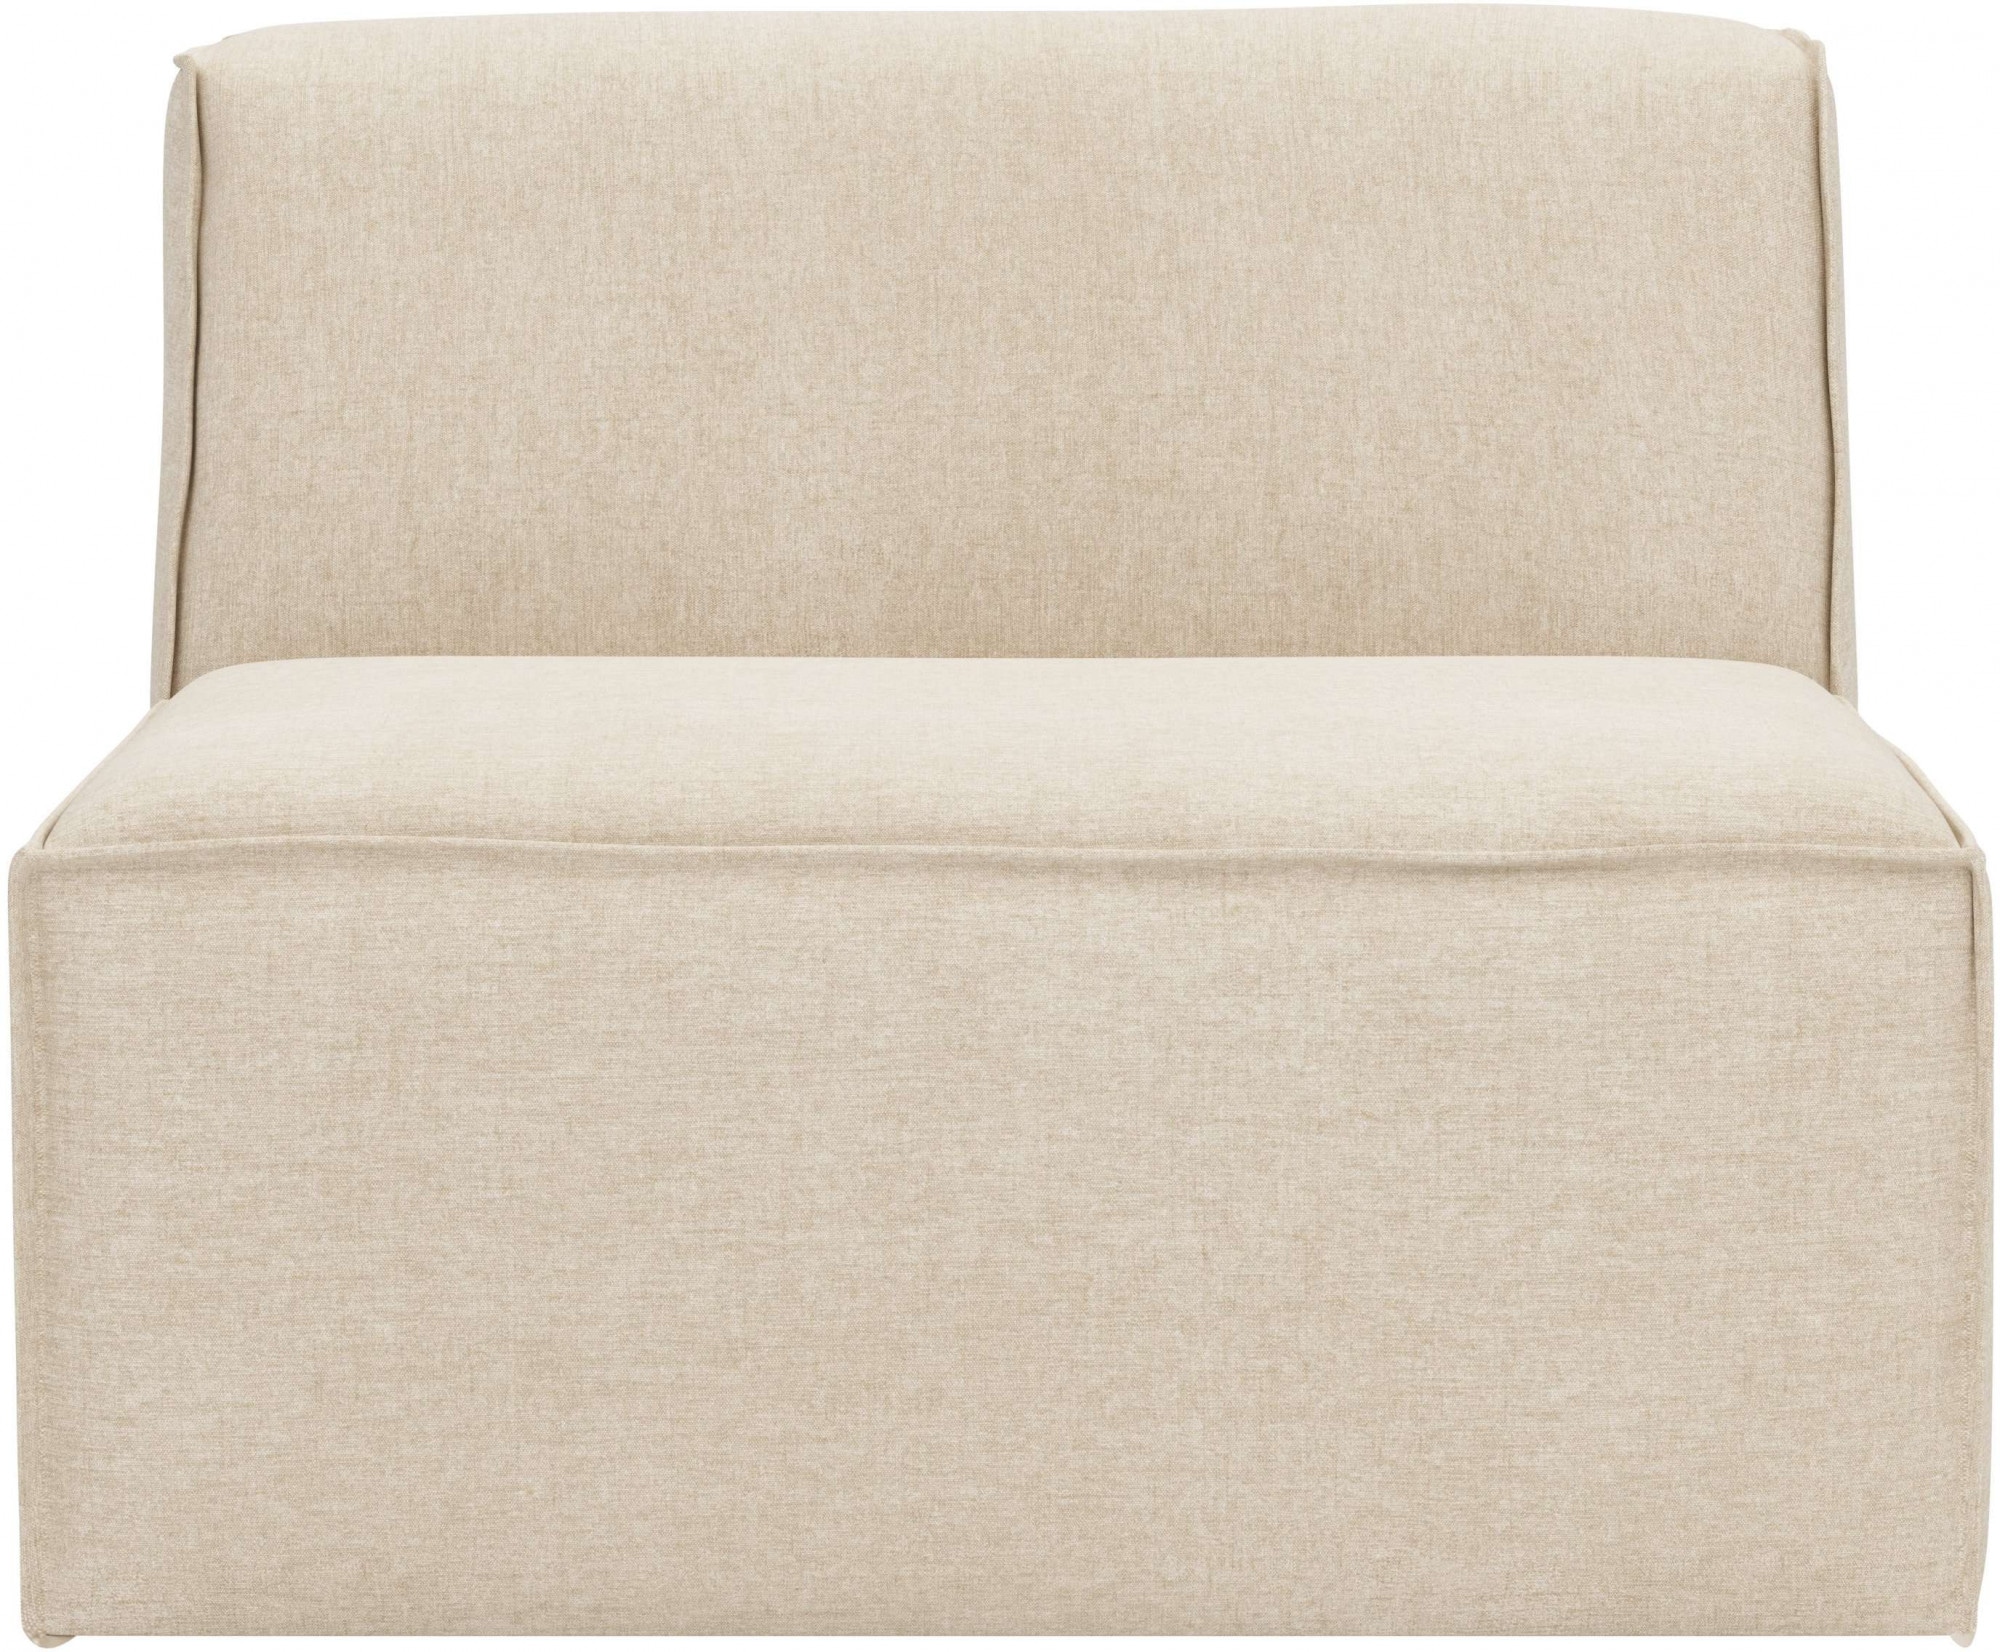 RAUM.ID Sofa-Mittelelement »Norvid«, modular, mit Kaltschaum, große Auswahl an Modulen und Polsterung